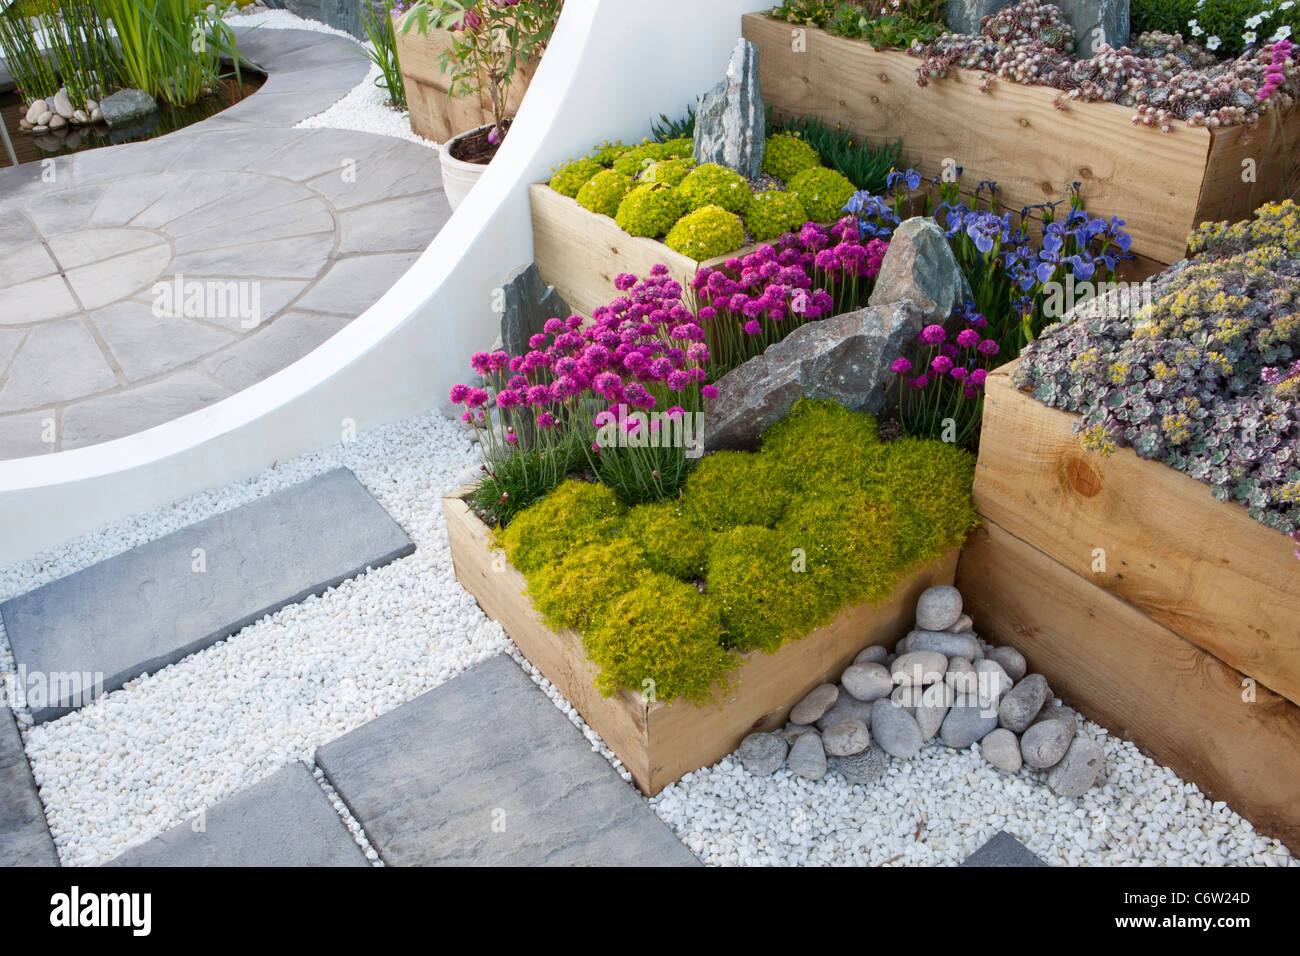 Un moderno giardino con patio circolare in pietra pavimentata e letti rialzati realizzati con traversine in legno vecchie piante alpine in container UK Foto Stock